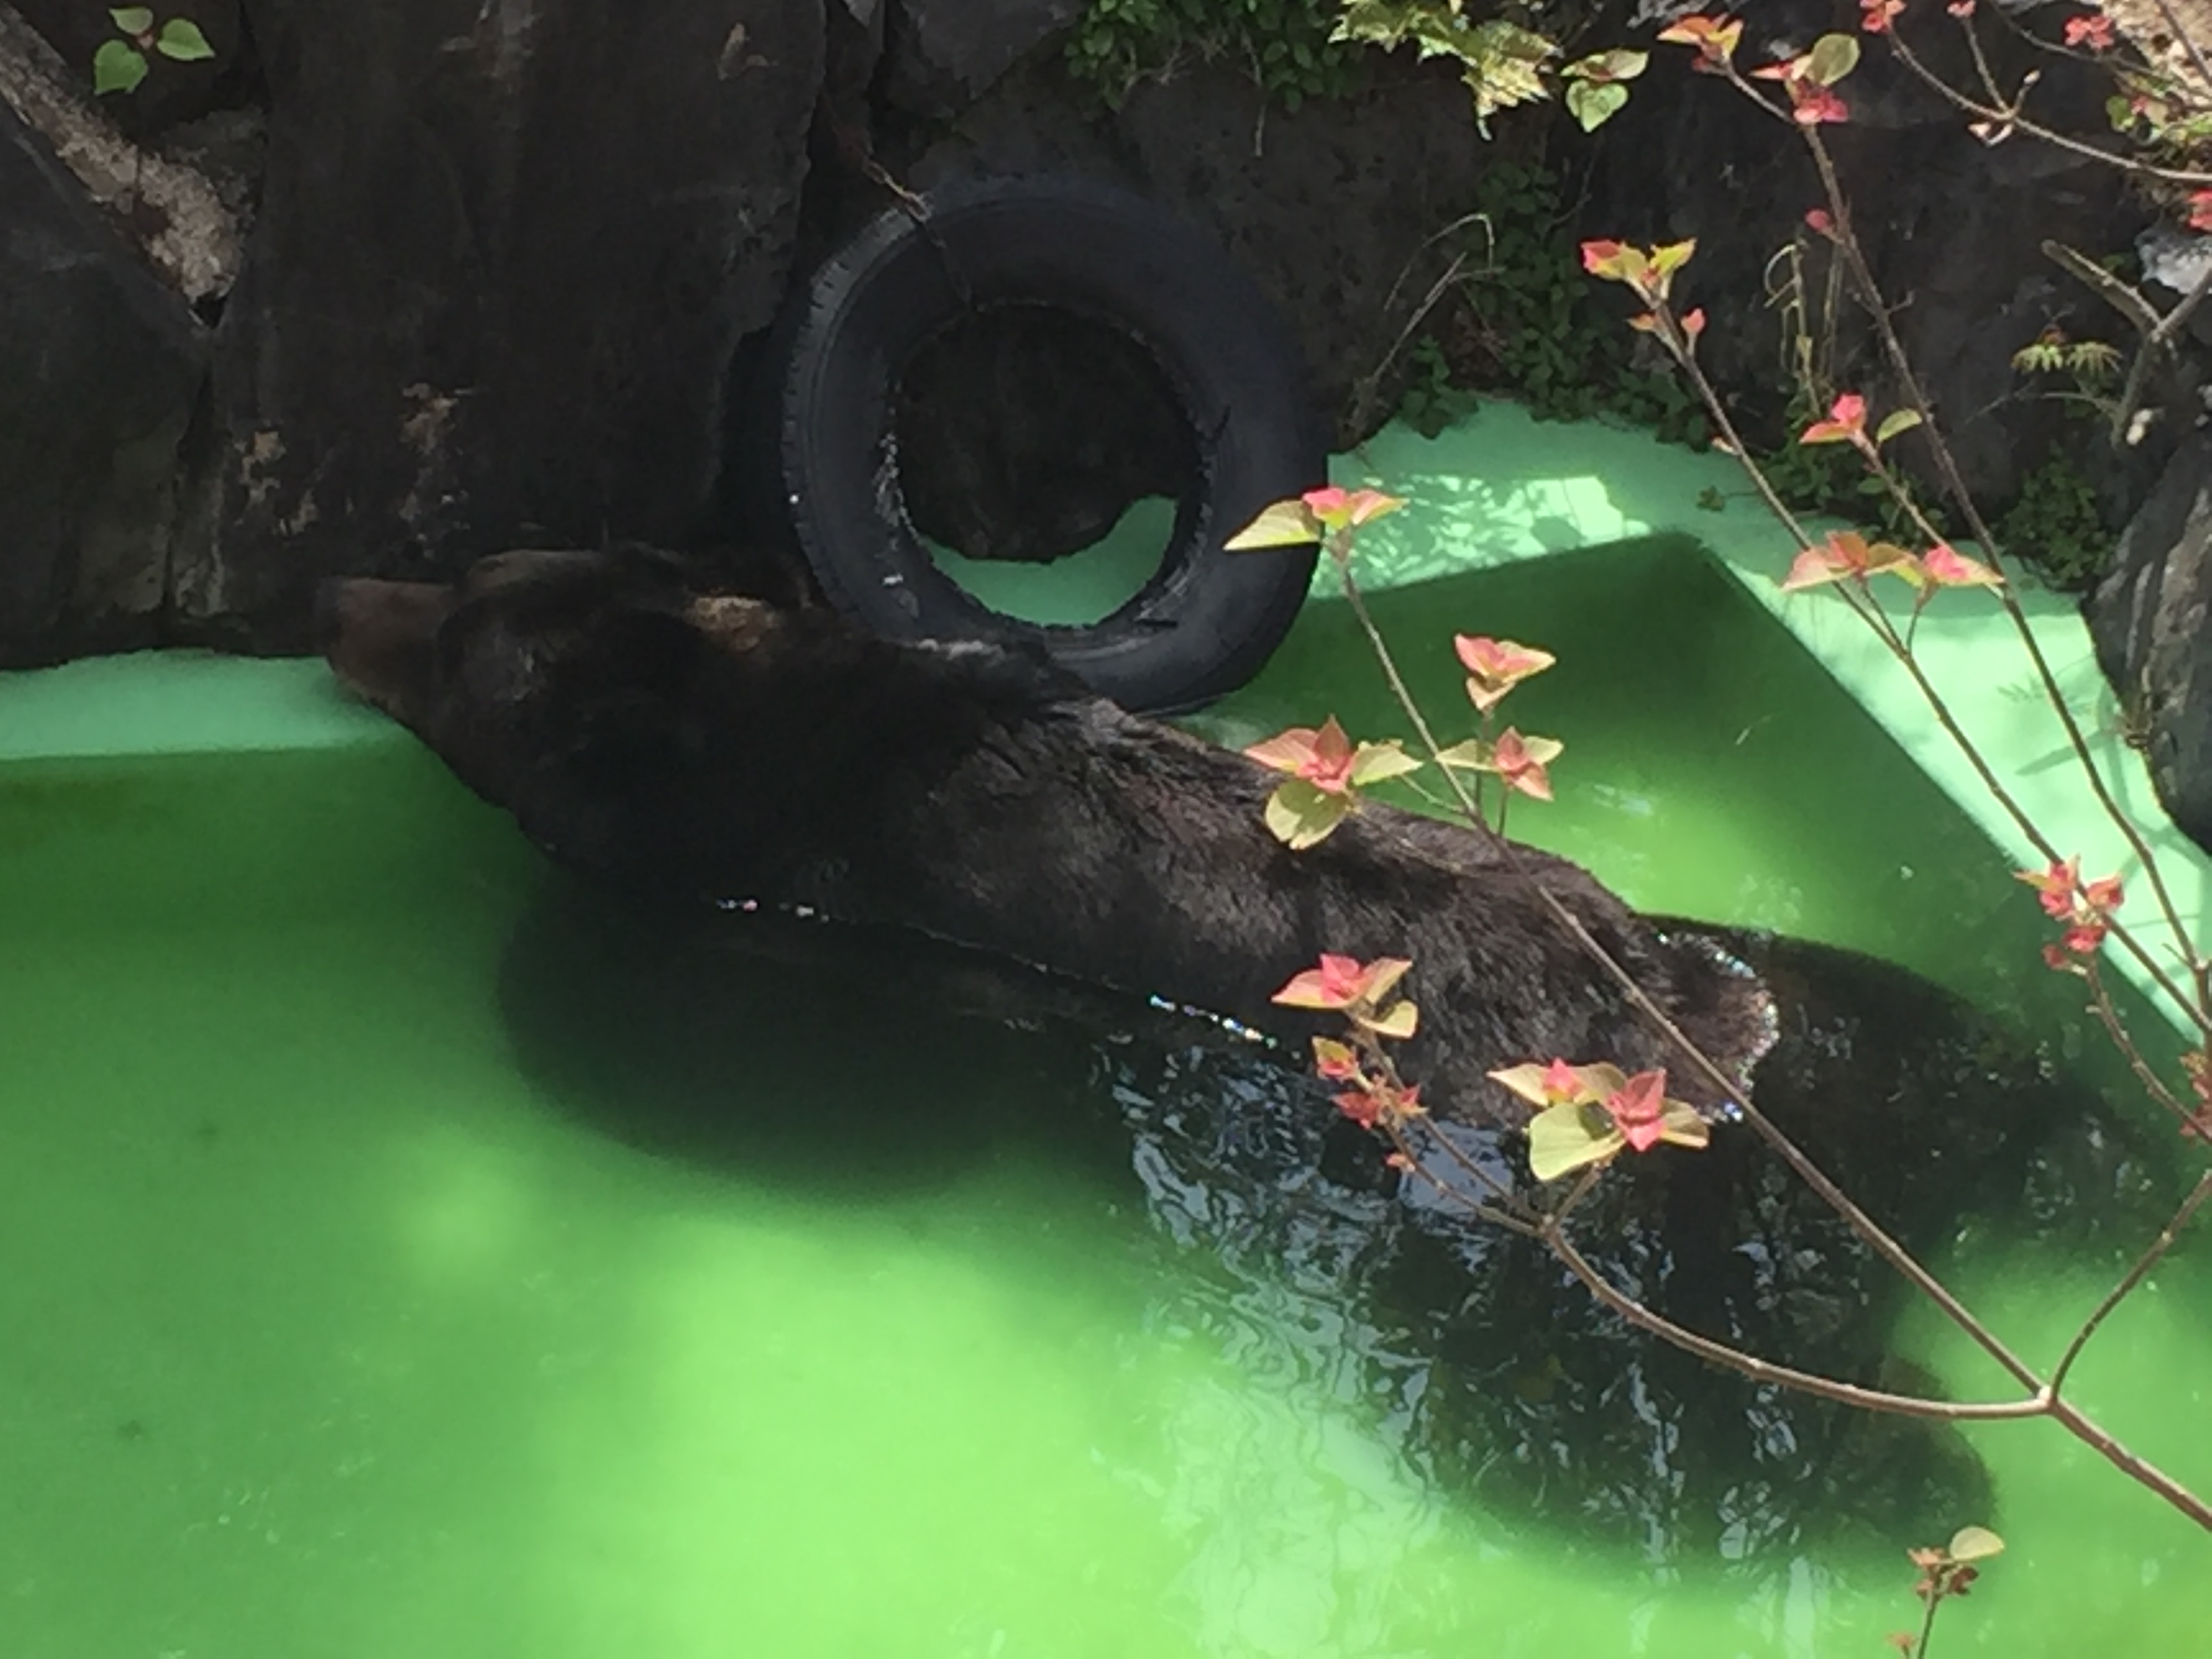 higashiyama-zoo-bear